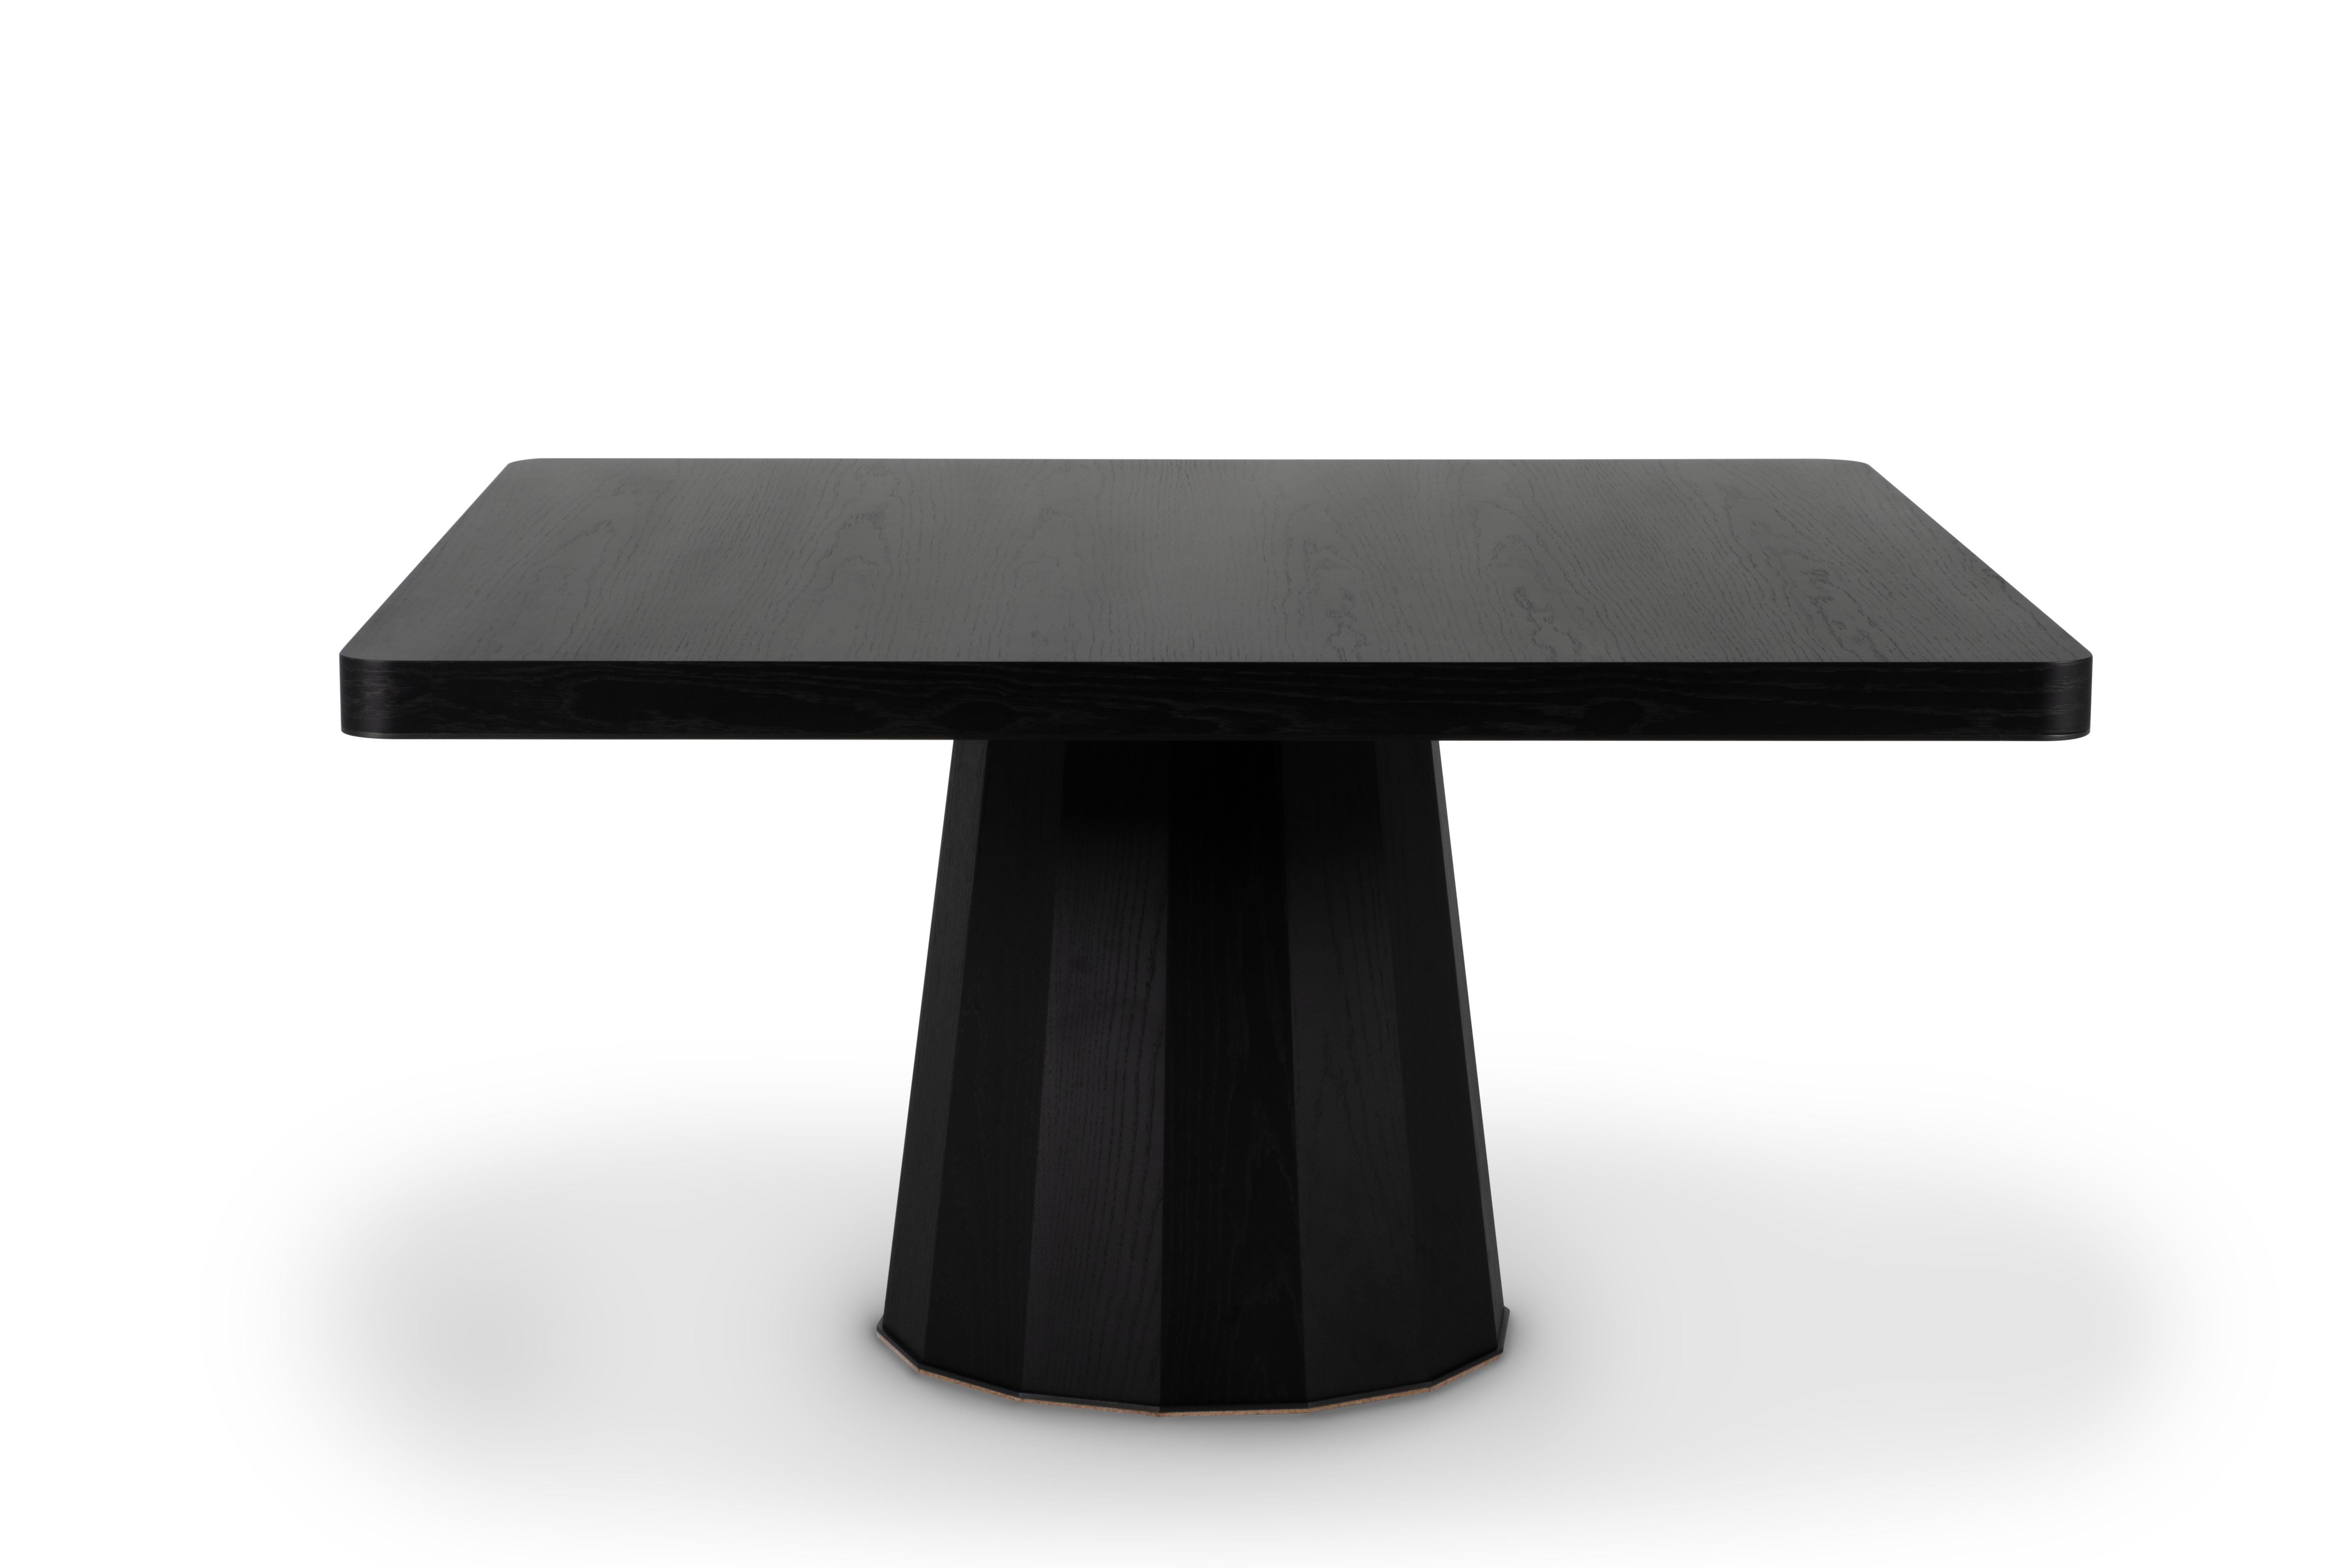 Howlite Dining Table 8-Seats, Collectional, Handcrafted in Portugal - Europe by GF Modern.

La table de salle à manger noire Howlite représente l'aube d'une nouvelle ère moderne. Le détail en laiton oxydé noir sur le plateau de la table complète